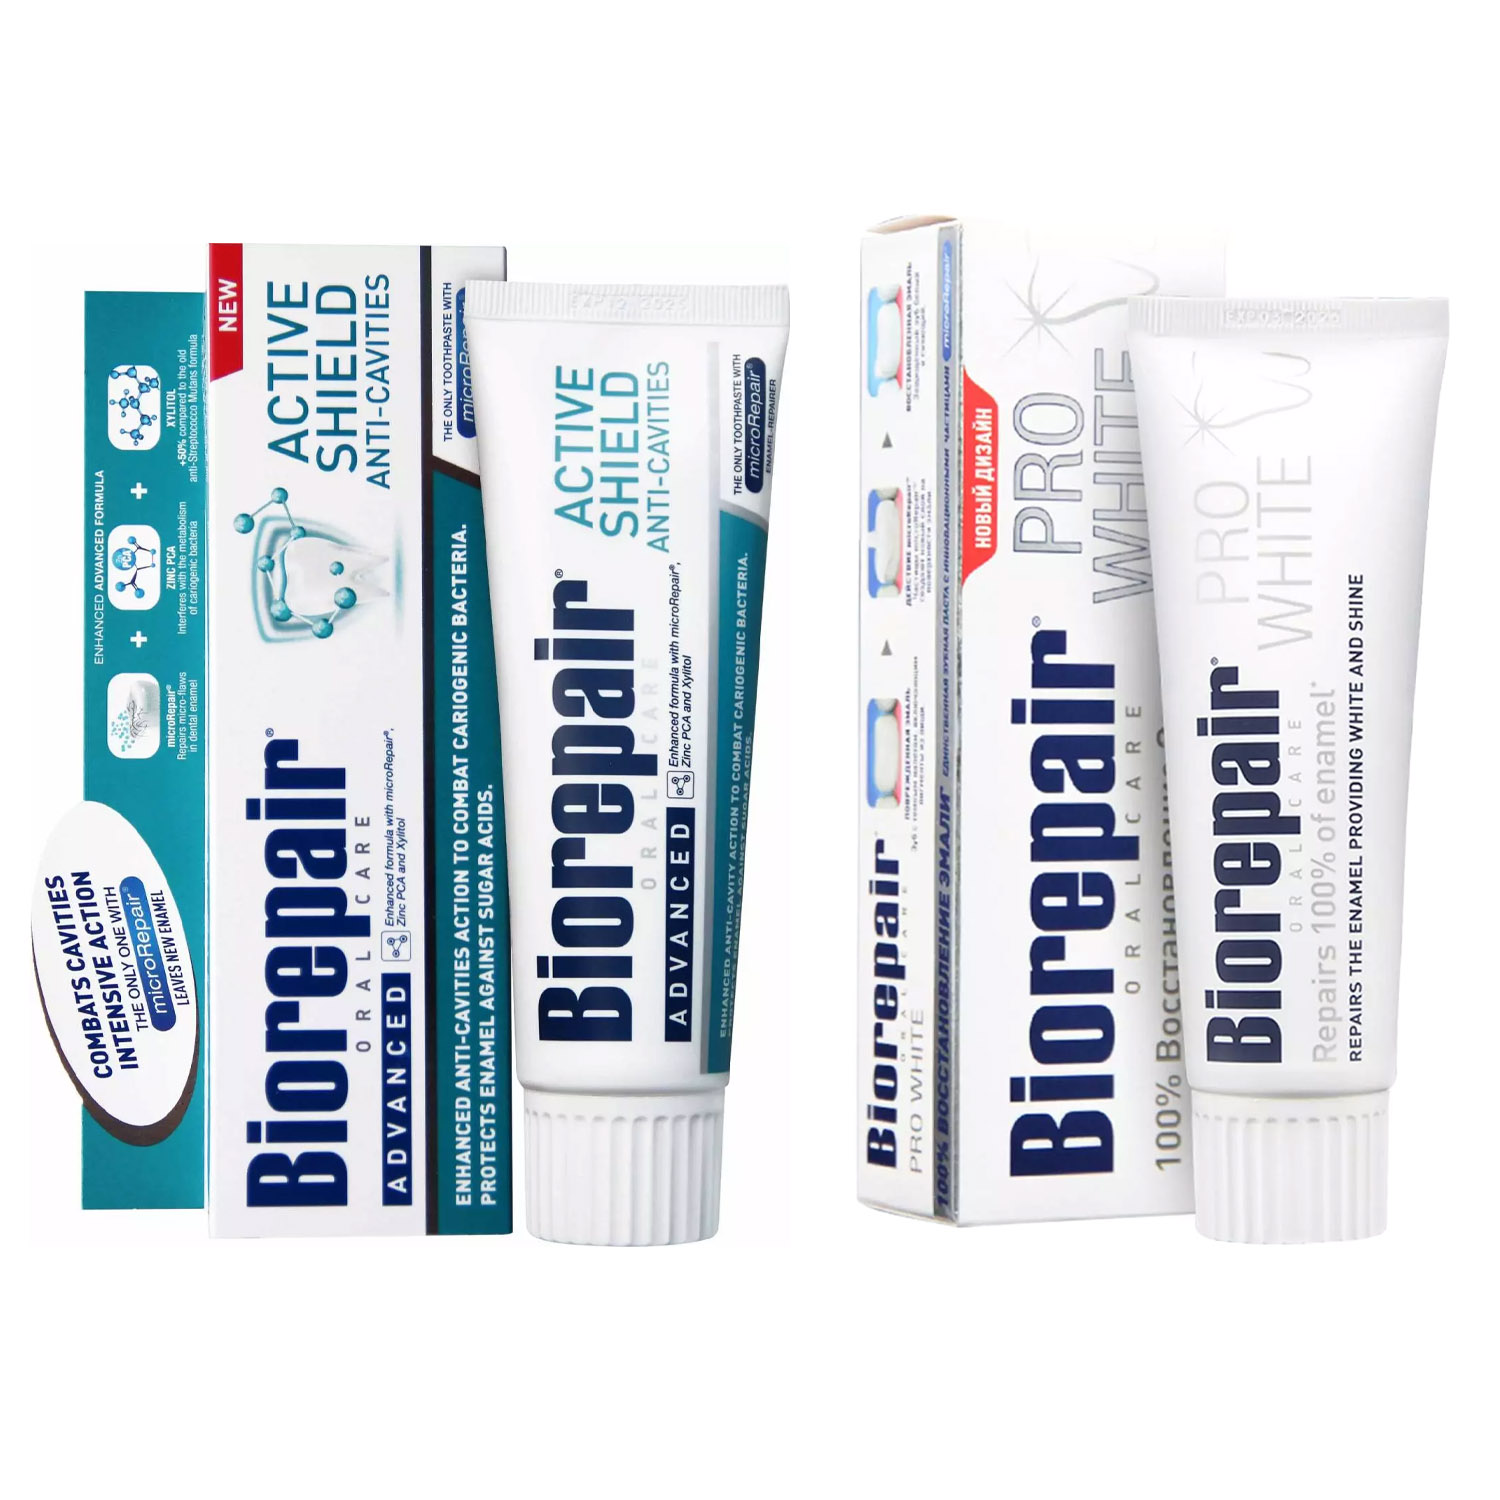 Biorepair Набор зубных паст для защиты эмали и сохранения белизны зубов, 2х75 мл (Biorepair, Отбеливание и лечение) biorepair набор зубных паст для сохранения белизны 2х75 мл biorepair отбеливание и лечение